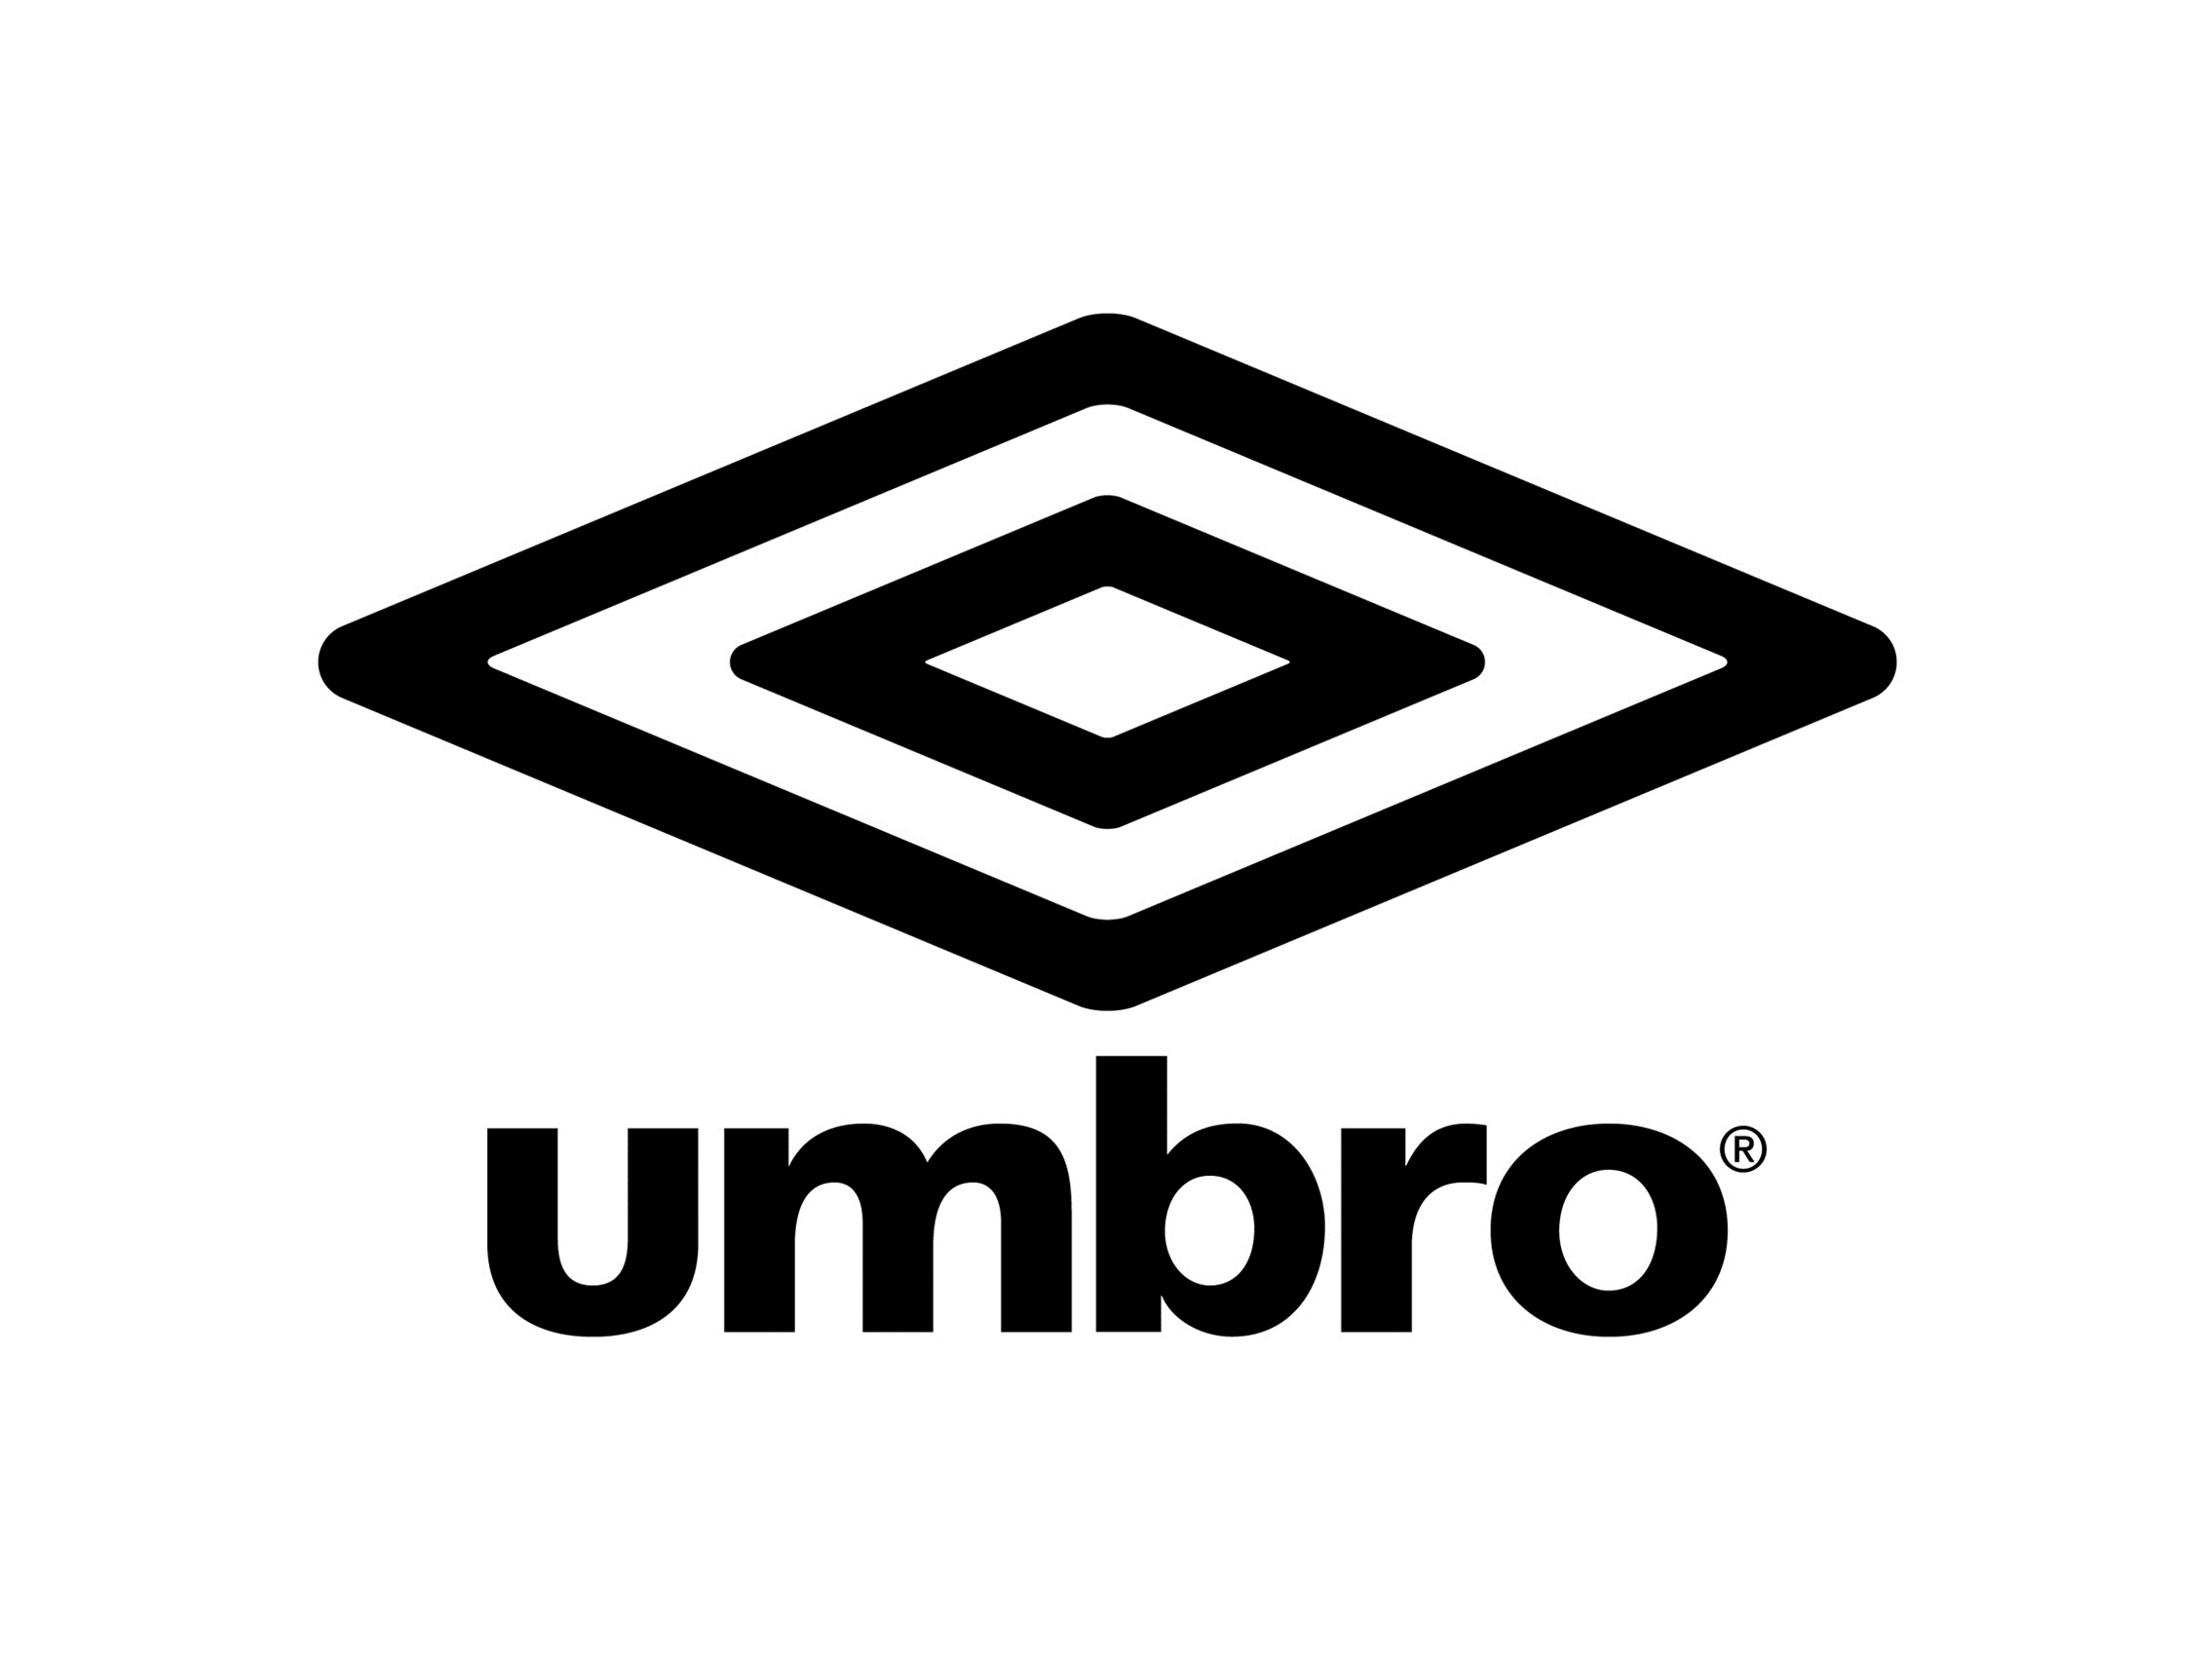 Umbro logo and wordmark